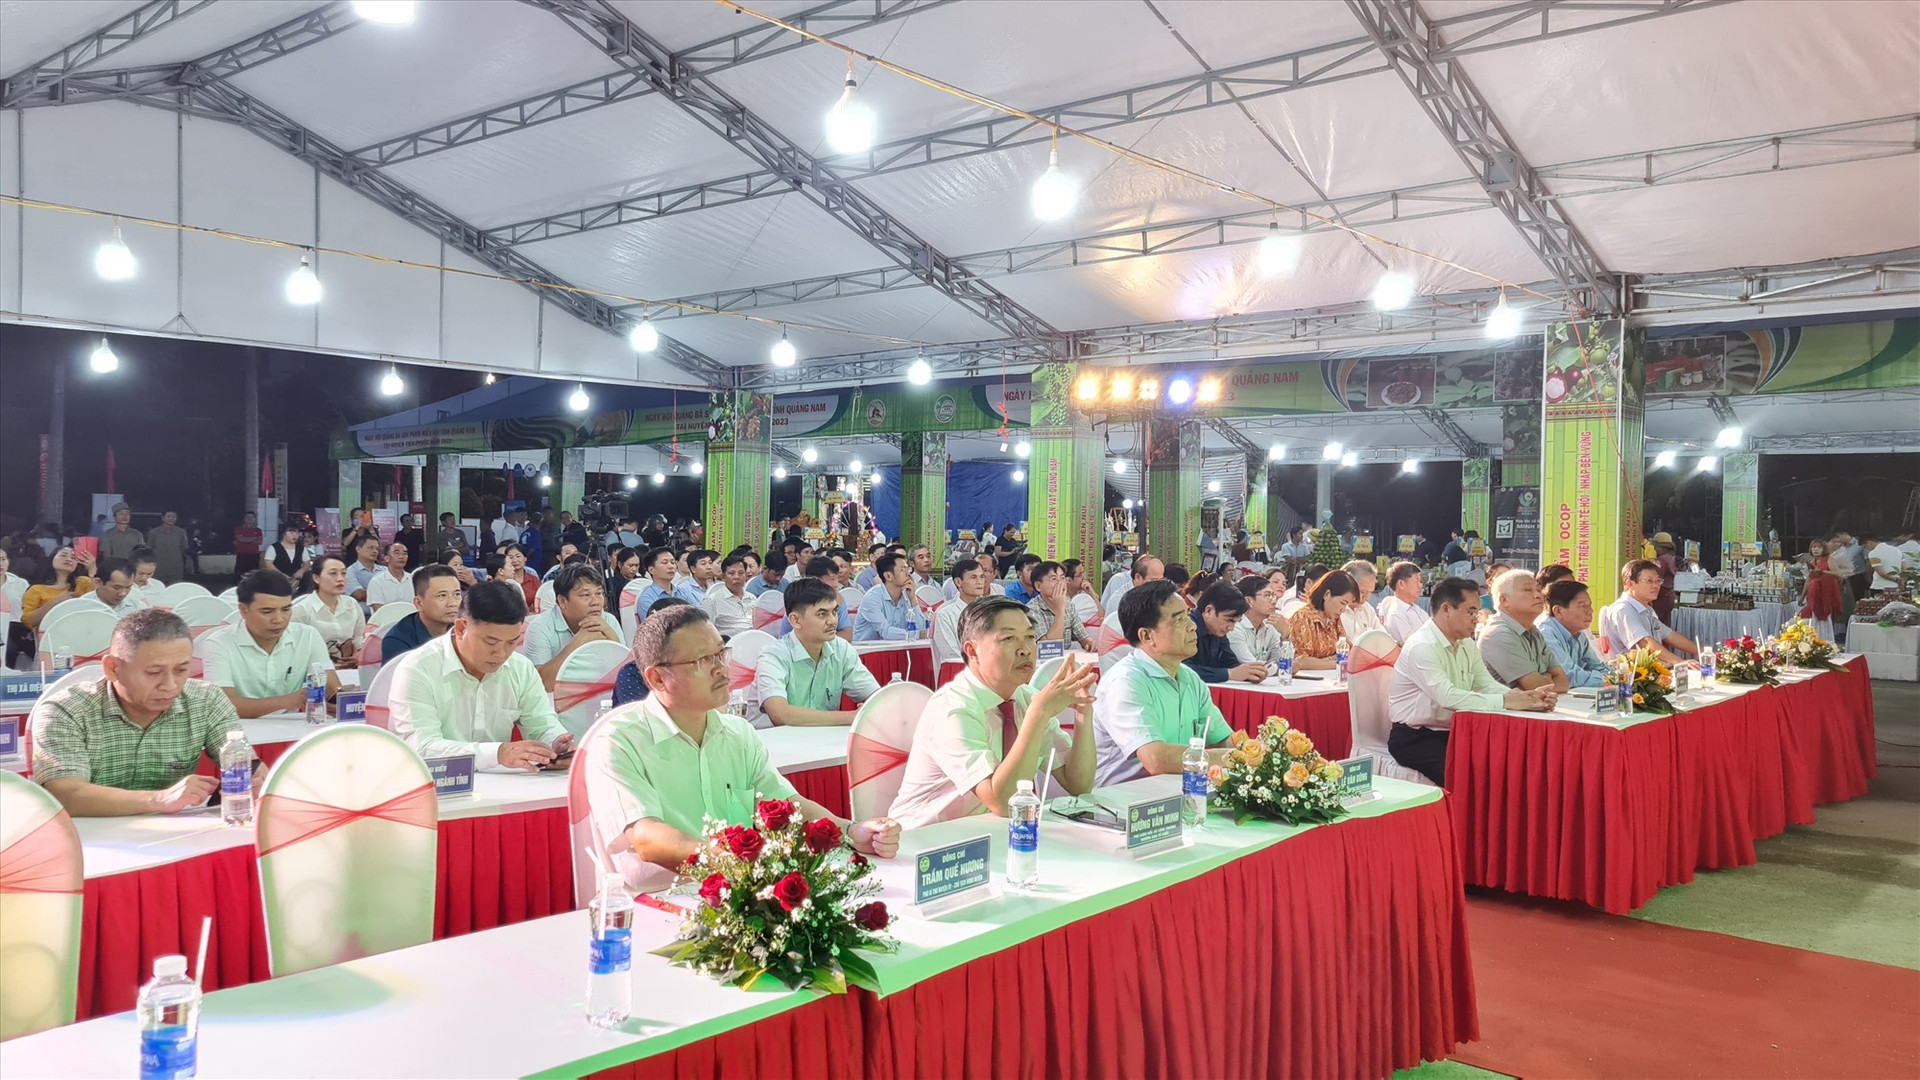 Đại biểu tham dự khai mạc Ngày hội quảng bá sản phẩm miền núi Quảng Nam tại Tiên Phước. Ảnh: D.L